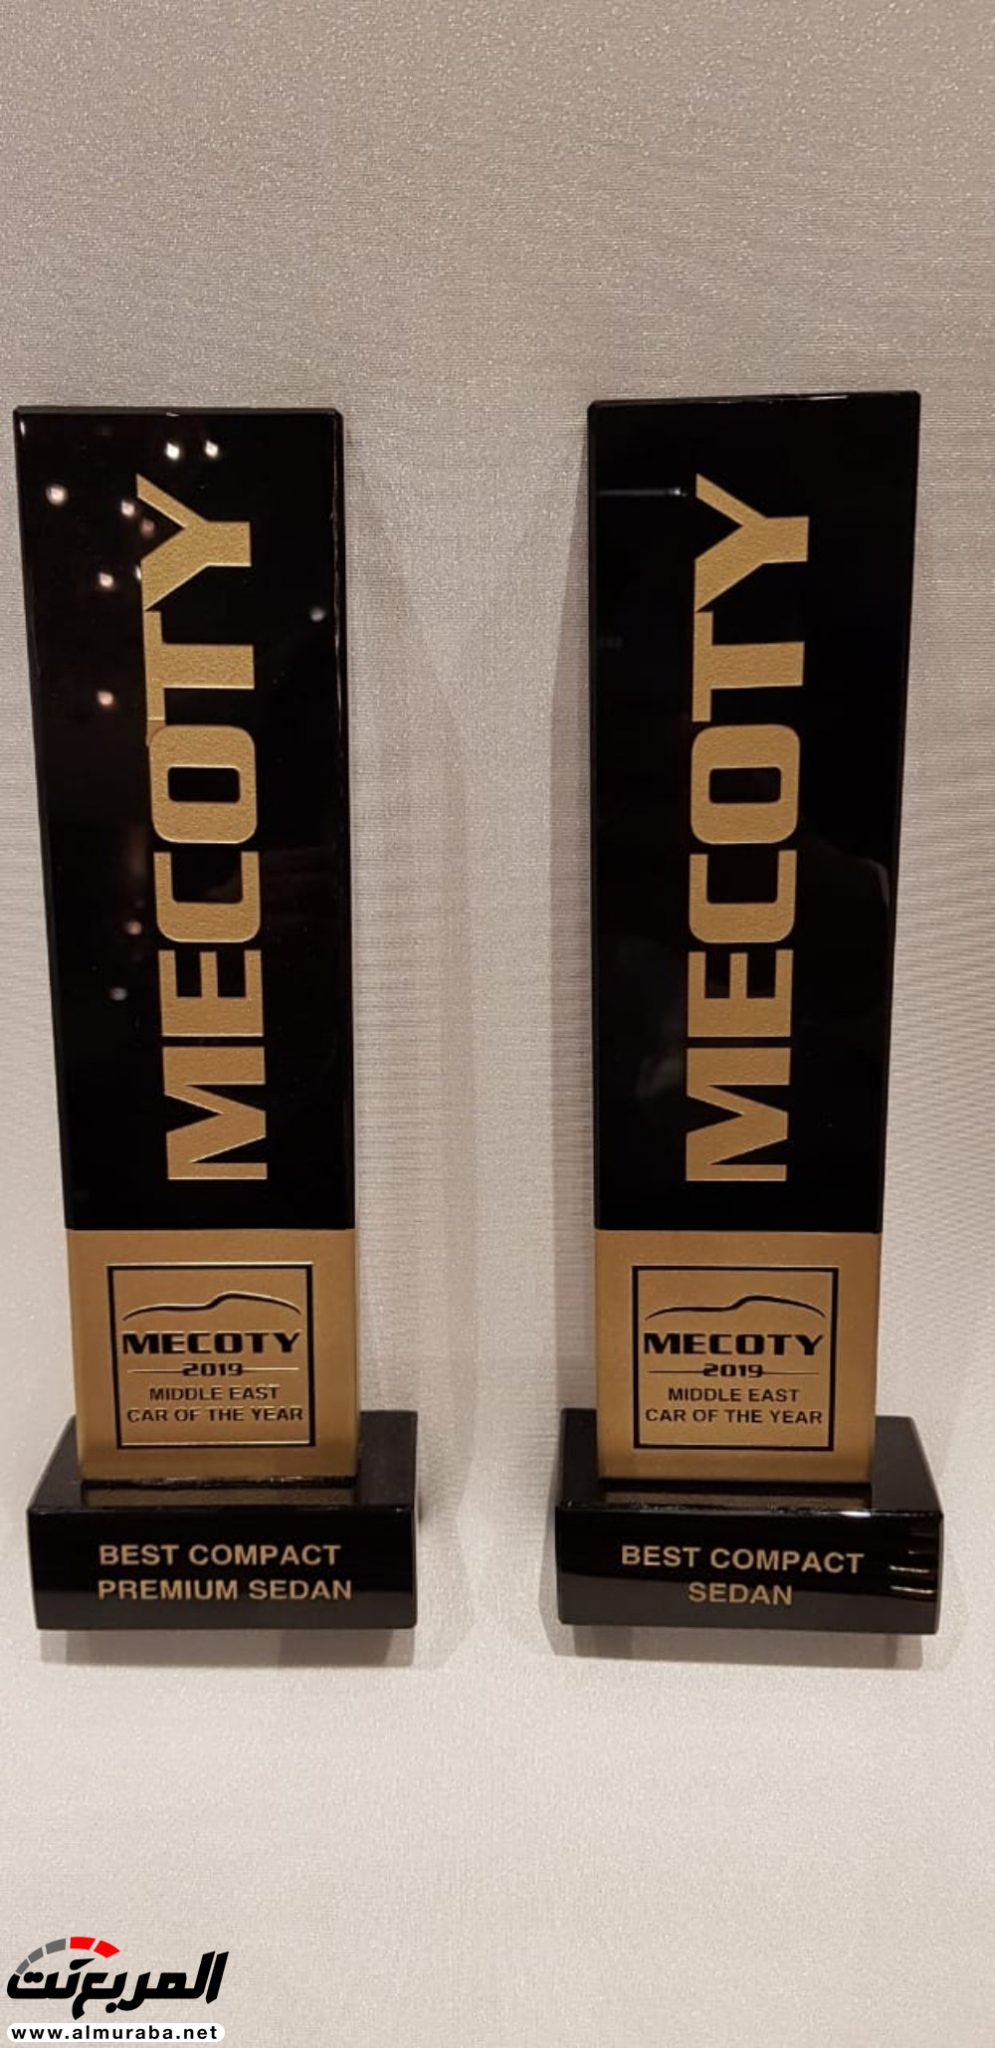 كيا "ستينجر وسيراتو" تحصدان جوائز MECOTY 2019 لأفضل طرازات فئة السيدان الصغيرة والفاخرة 61